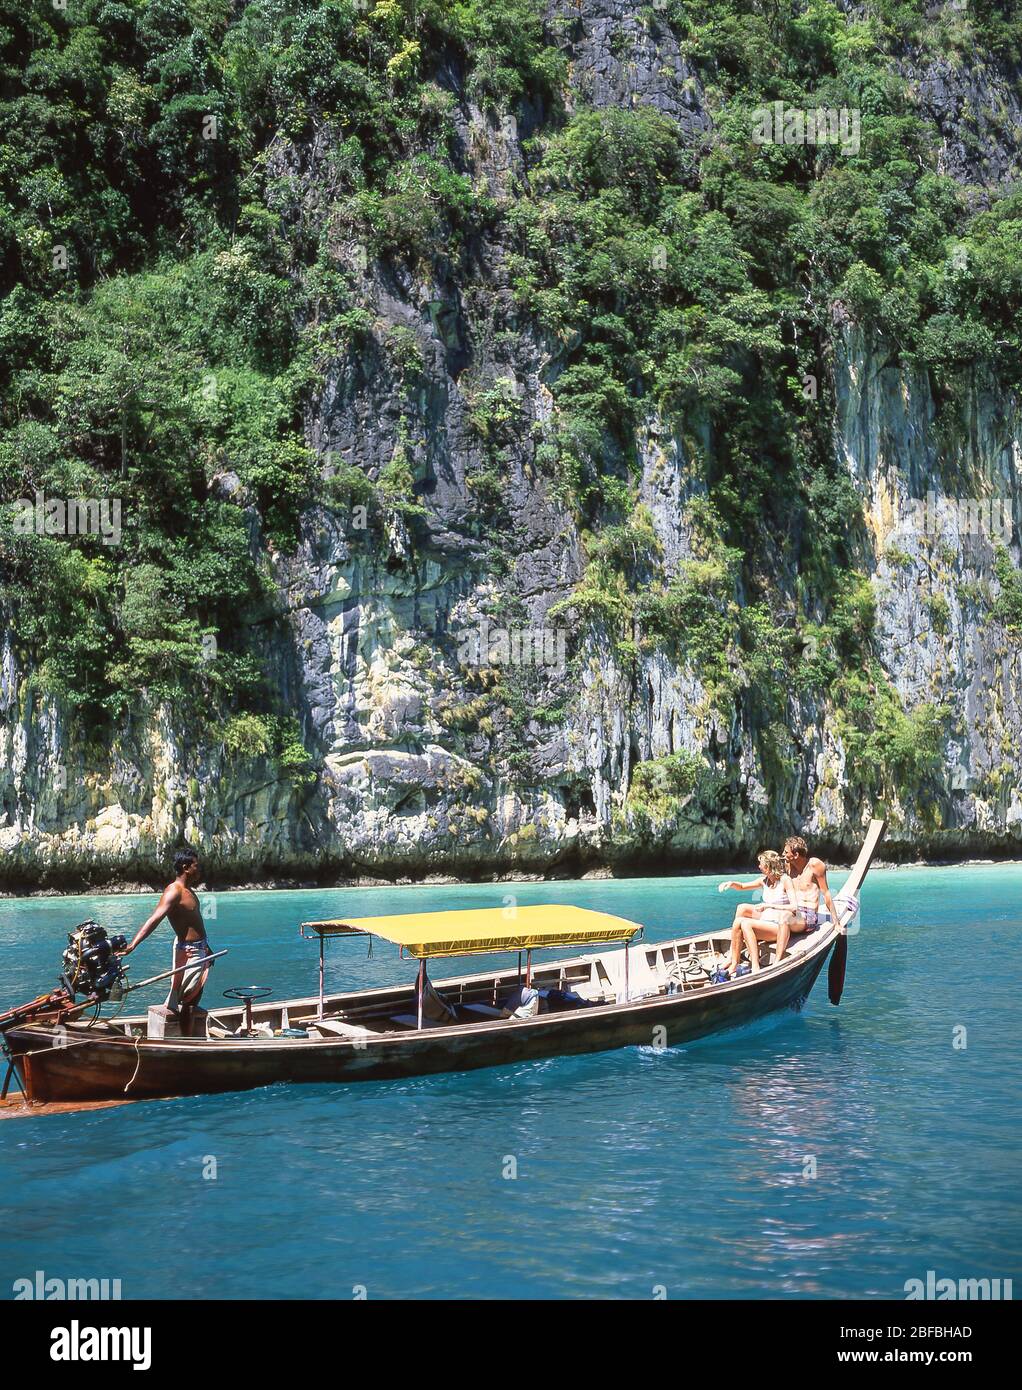 Promenade en bateau à queue longue, Koh Phi le, les îles Phi Phi, la province de Krabi, Thaïlande Banque D'Images